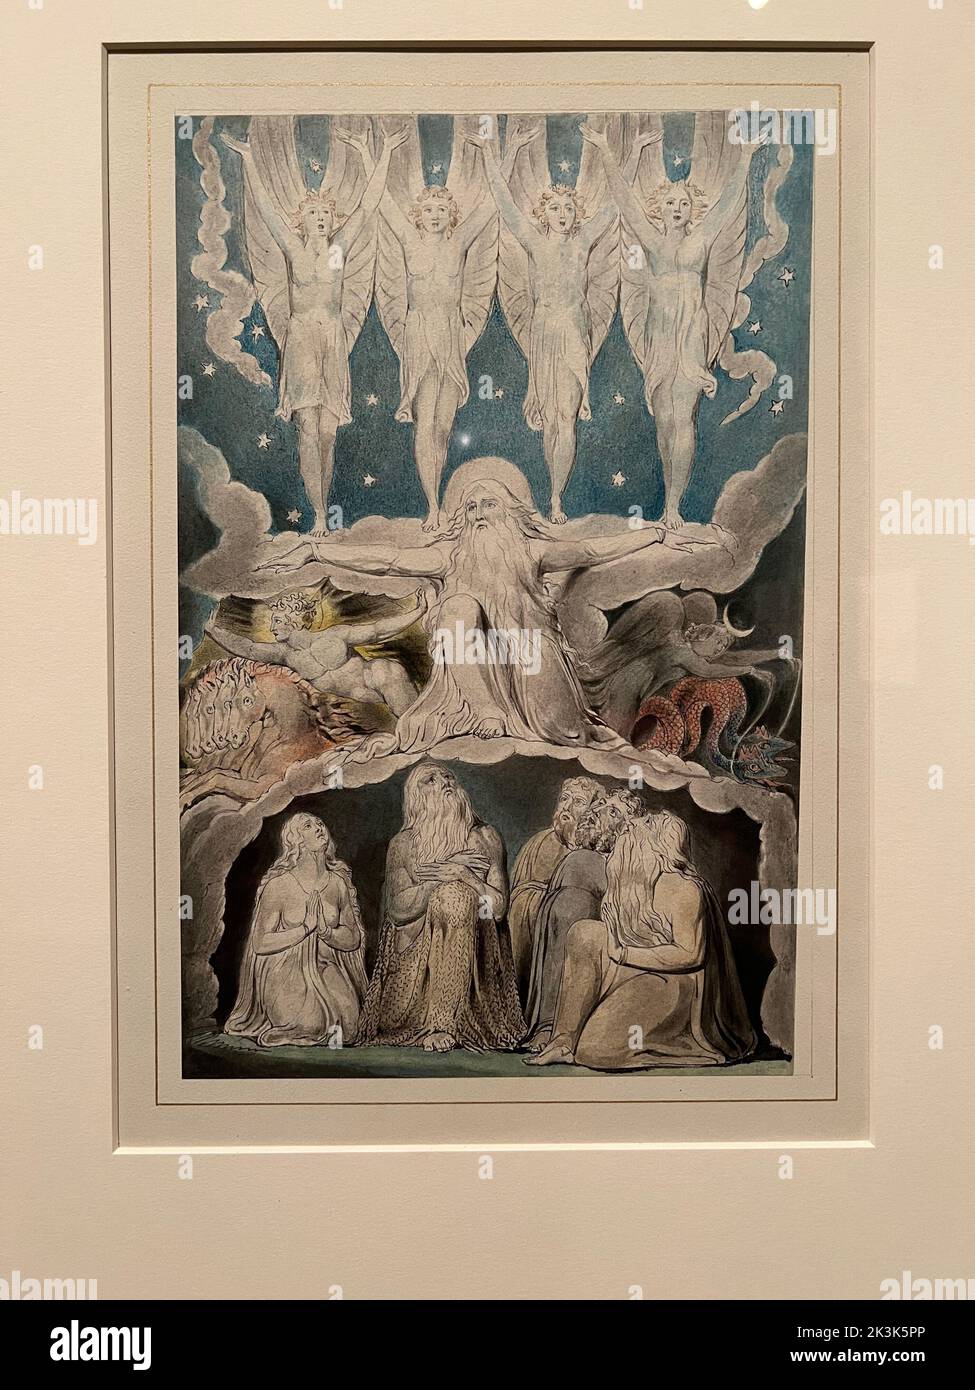 William Blake (1757-1827) quando le stelle del mattino cantano insieme, penna e inchiostro nero e grigio, con acquerello, sopra grafite, LA BIBLIOTECA MORGAN & MUSEUM, New York City. Foto Stock